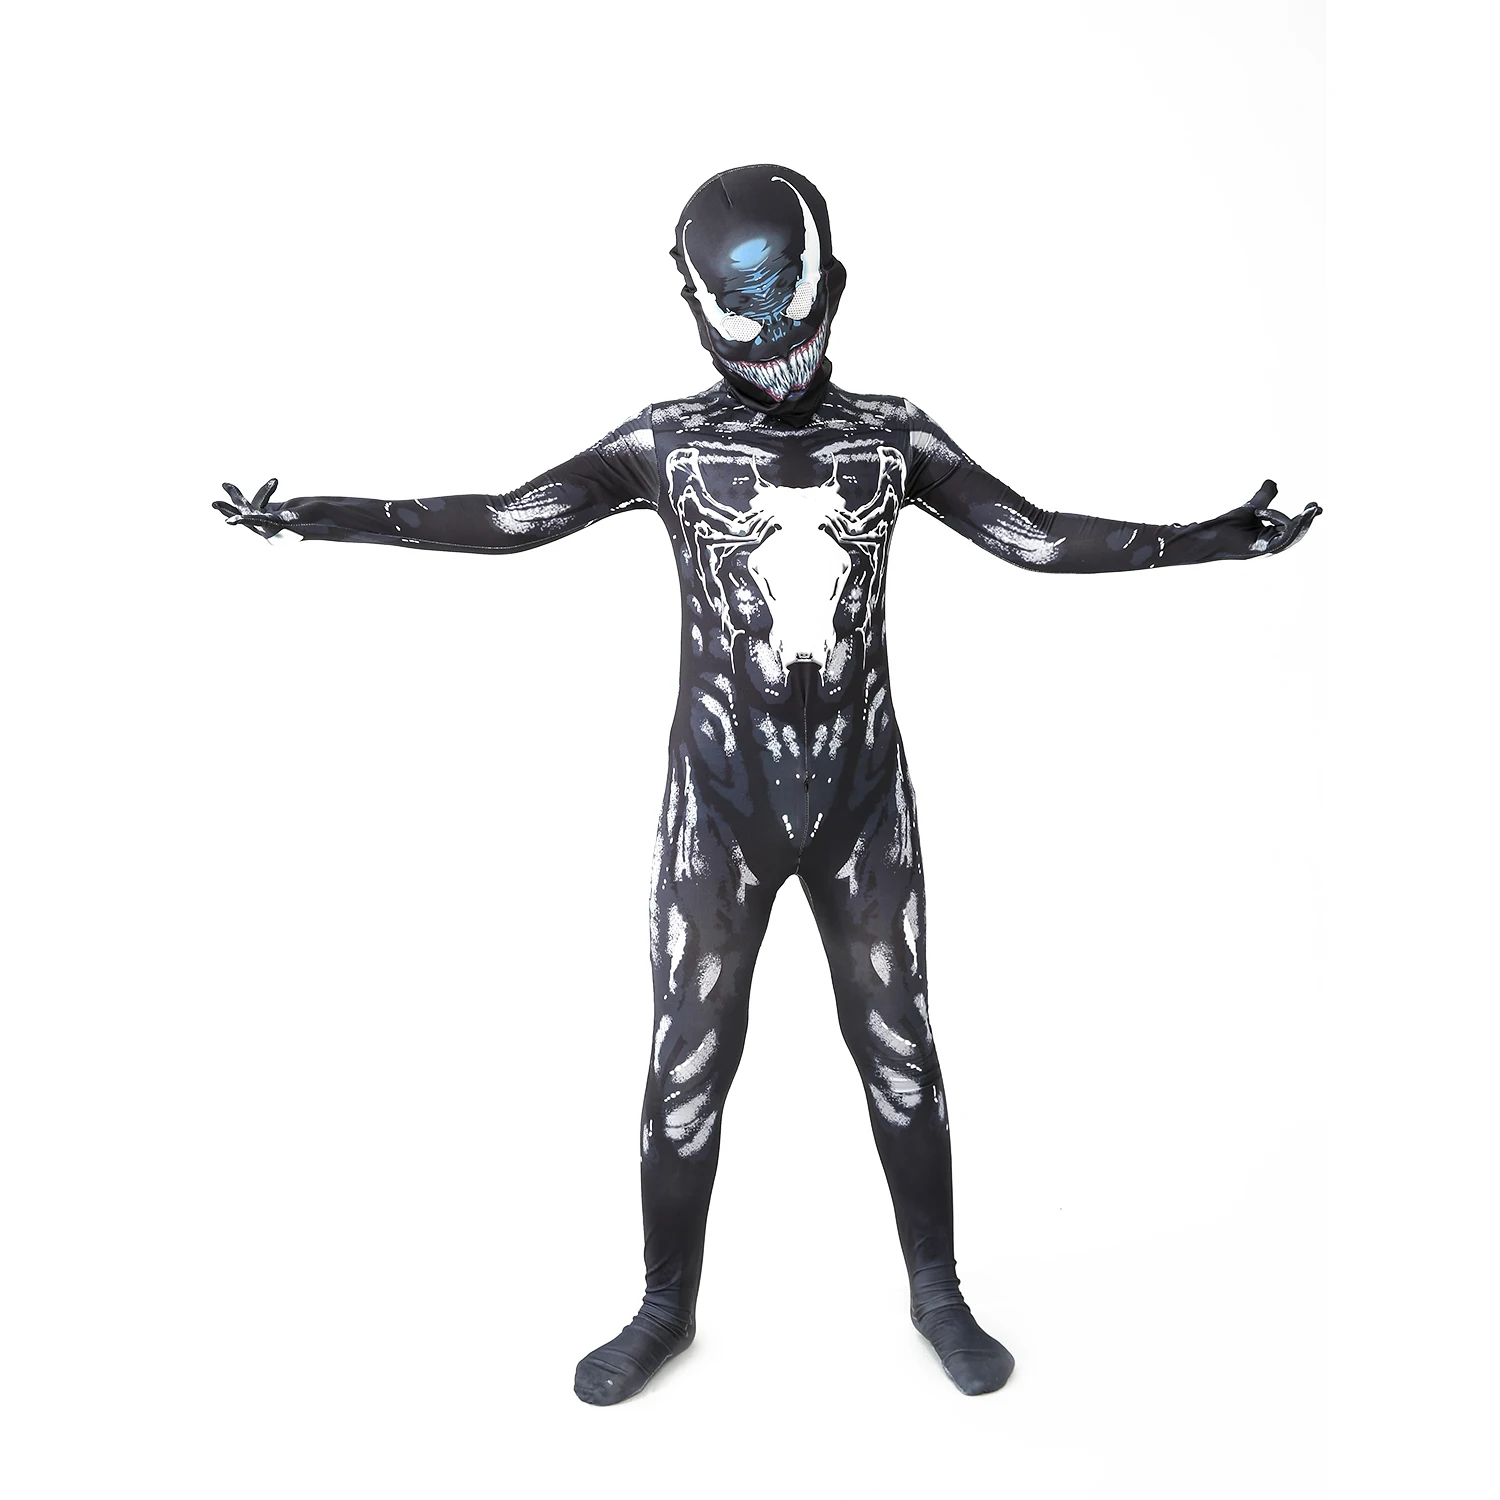 Superheros Cosplay halloween kostüme fürnew venom kostüm kinder anzug overall jungen symbiote spidermancostumes